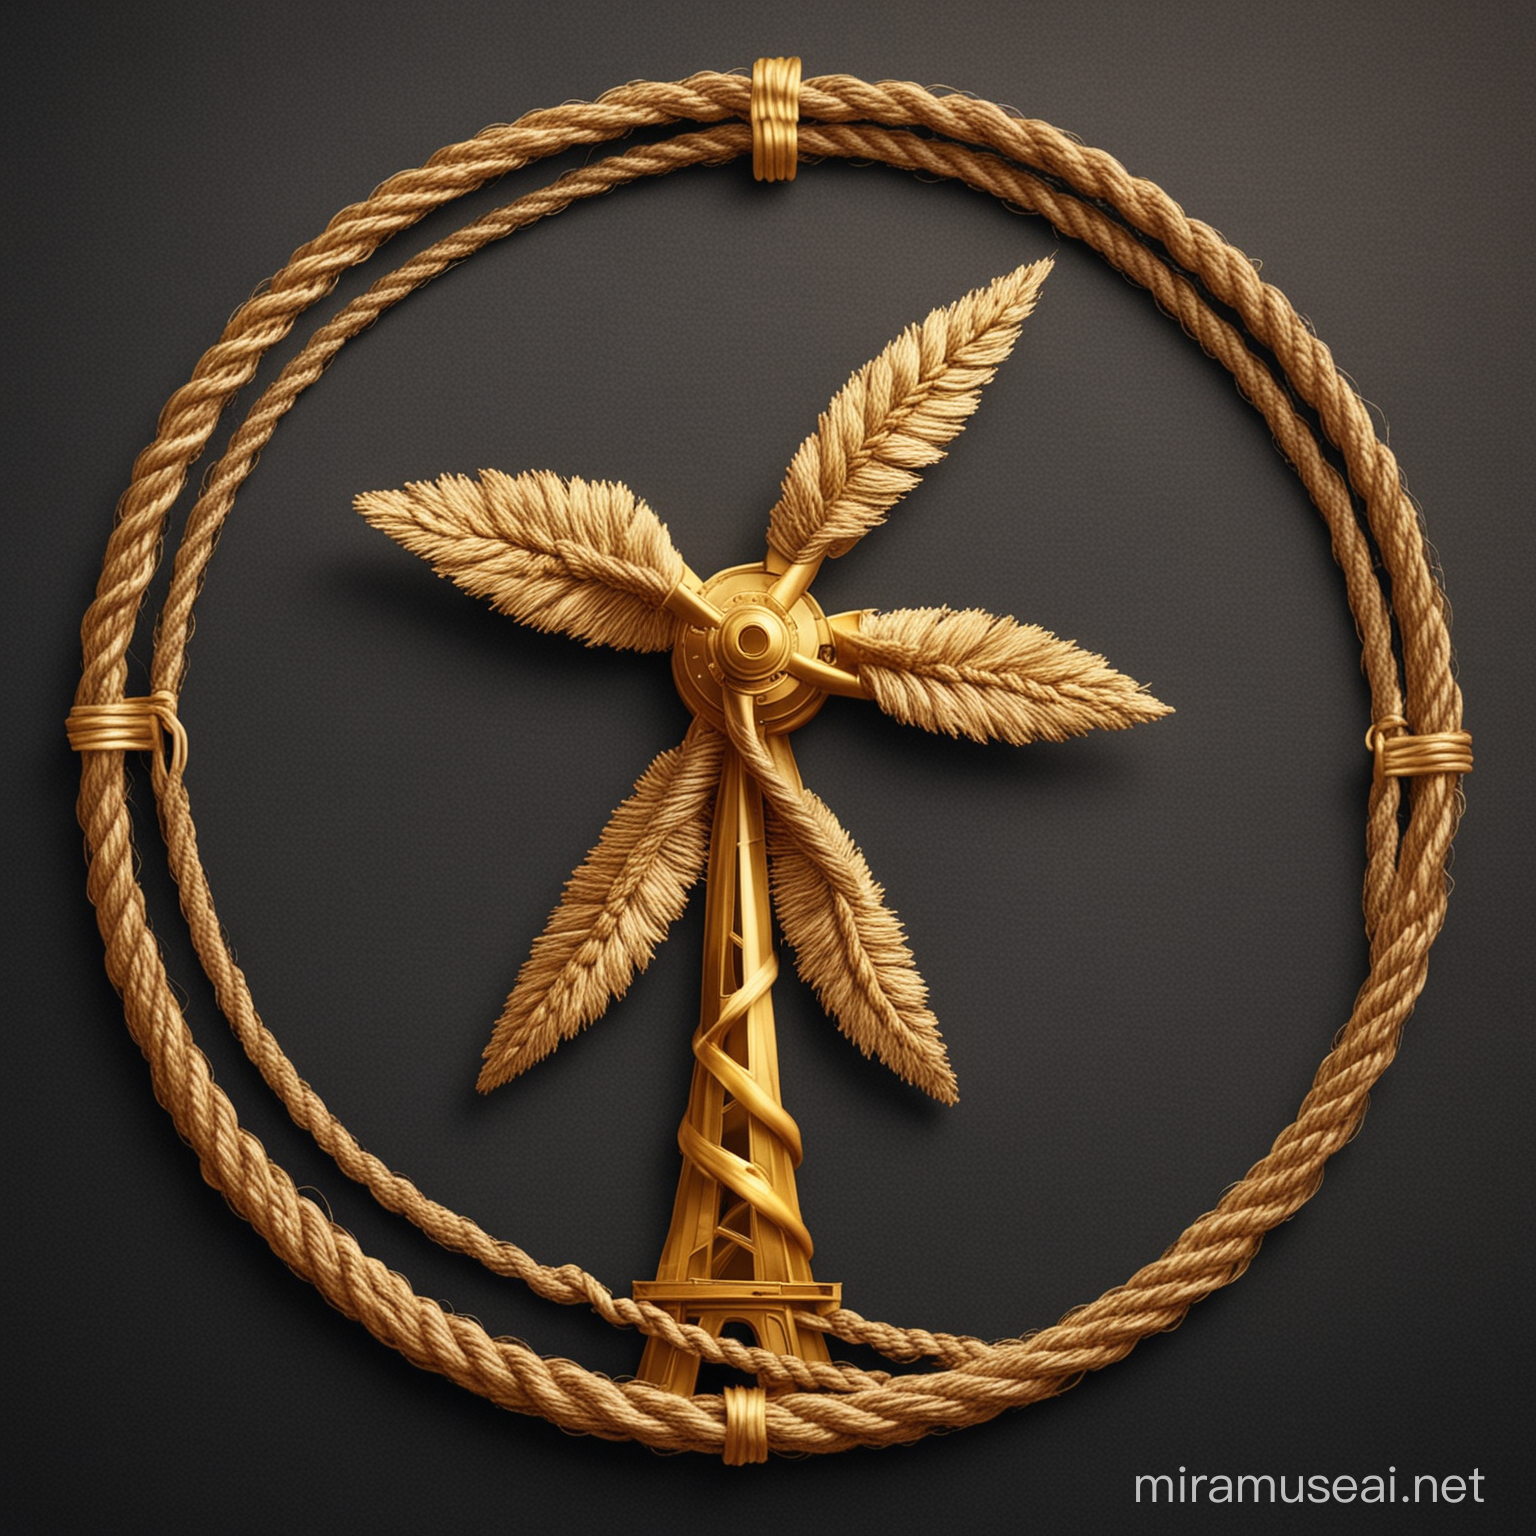 Golden Rope Windmill Turbine Logo Design for Sustainable Energy Branding